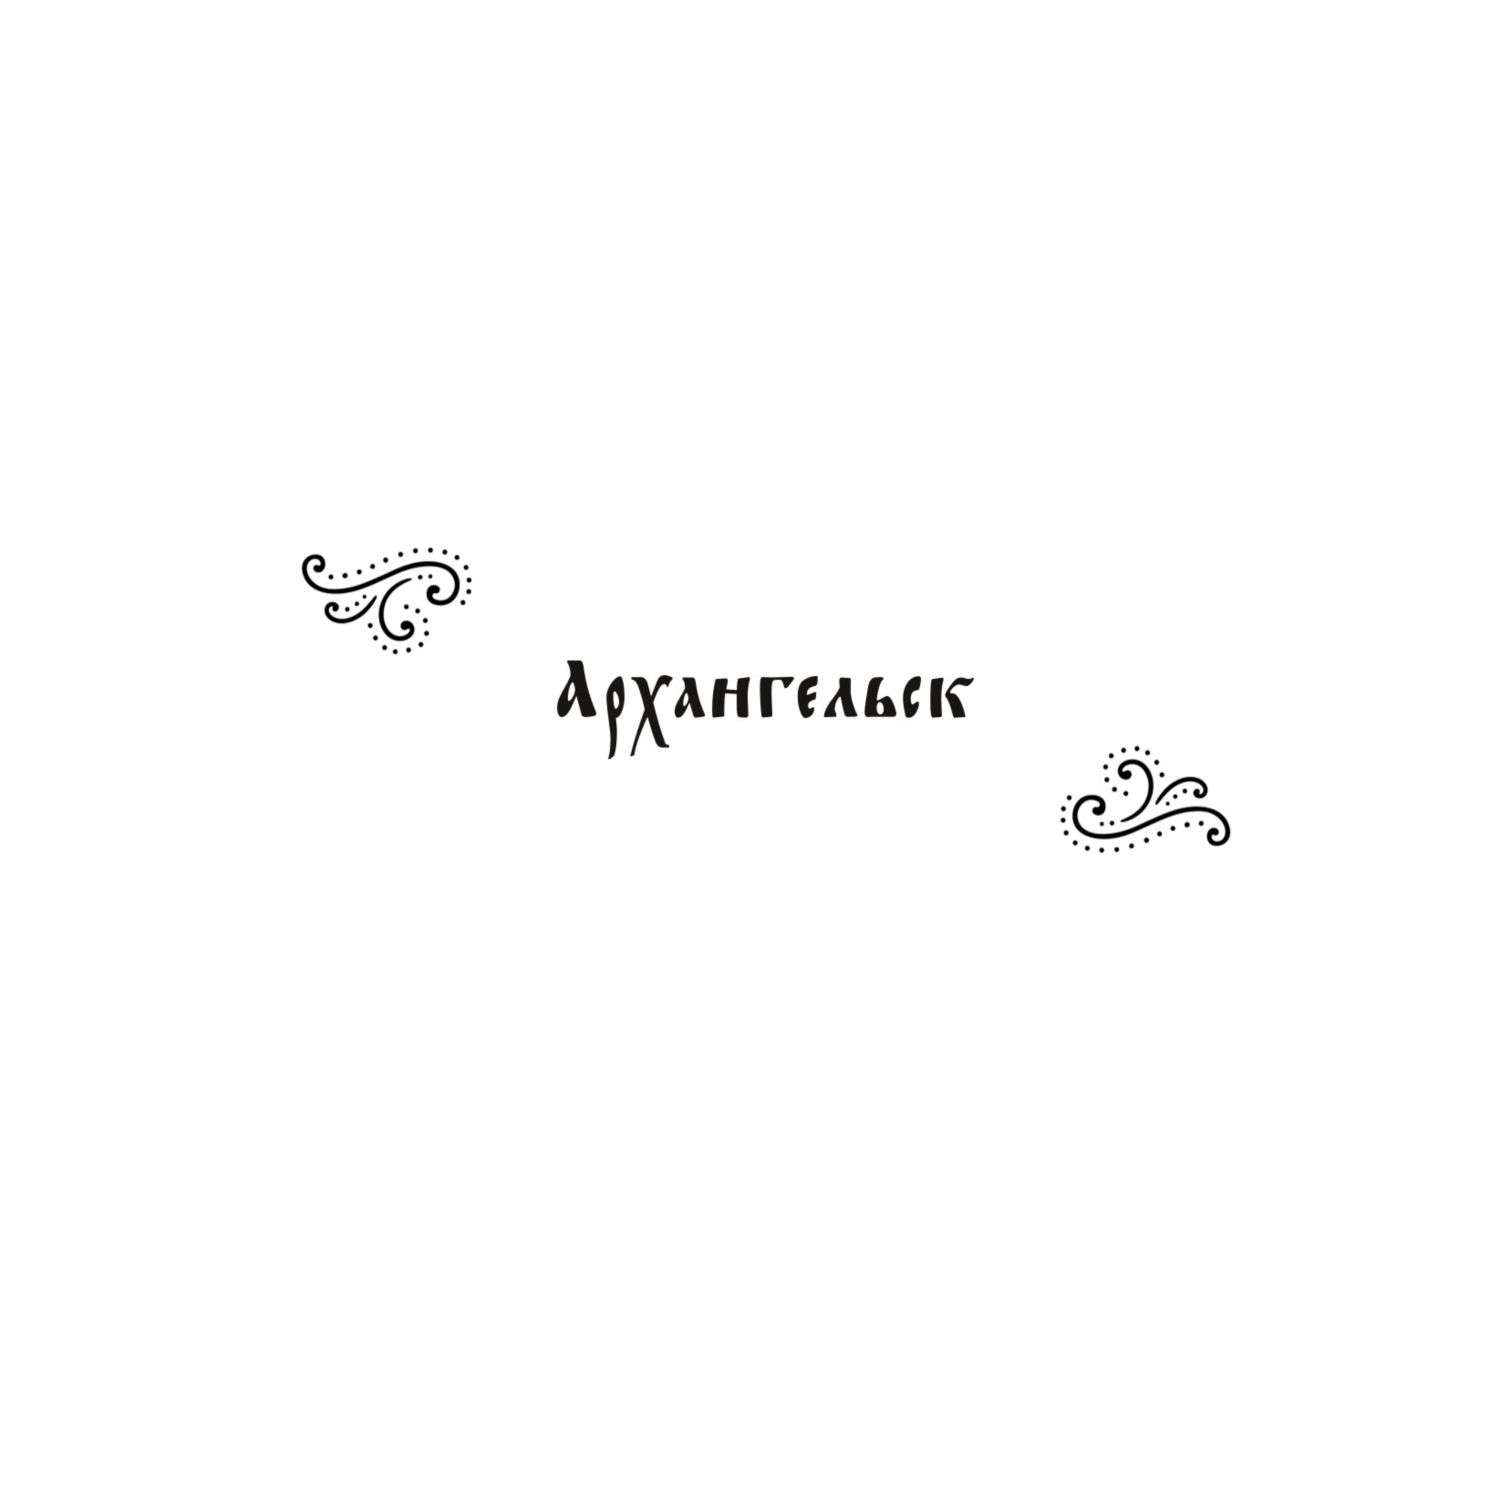 Раскраска Города России Раскрашиваем 42 персонажа по мотивам нашей родины - фото 2